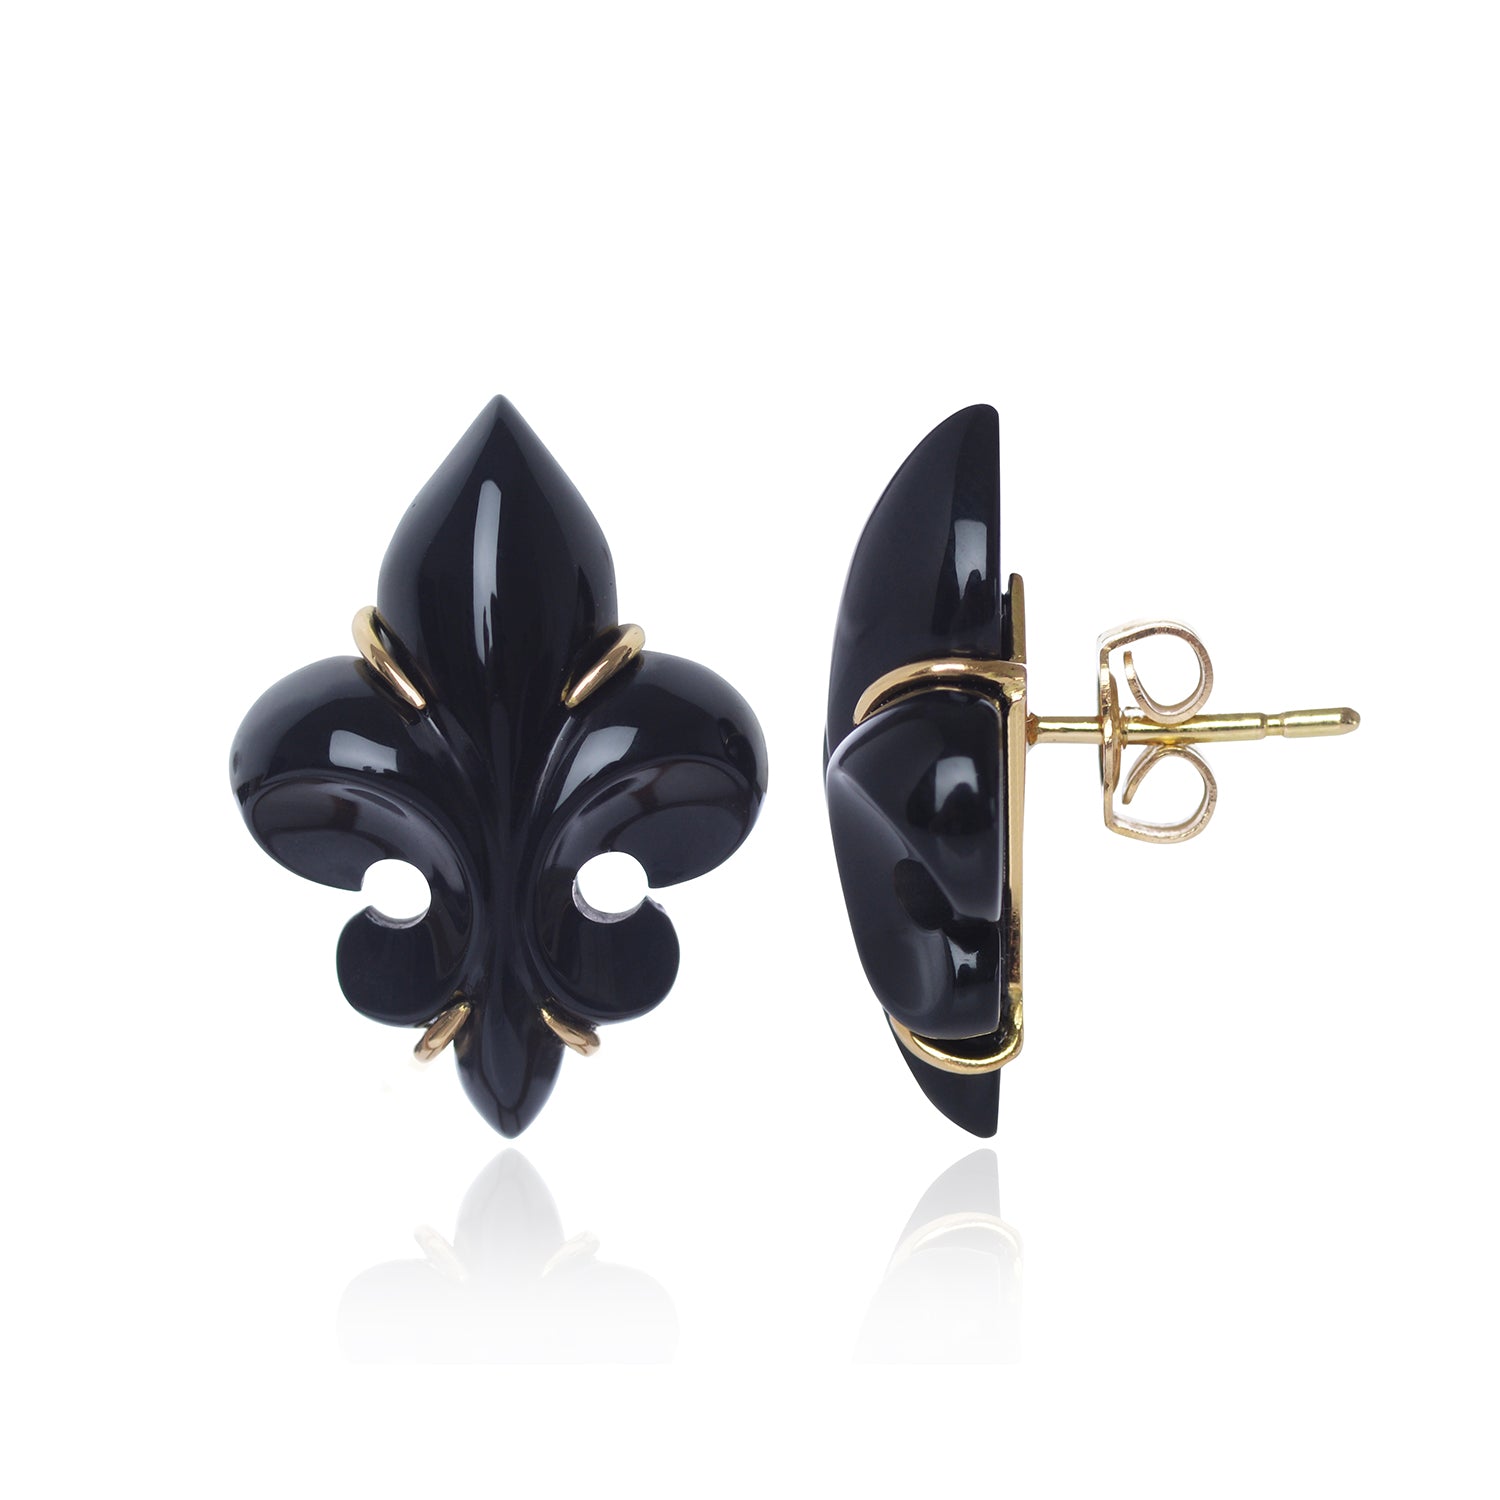 Polished Black Onyx Fleur des Lys Earrings side view by McFarlane Fine Jewellery